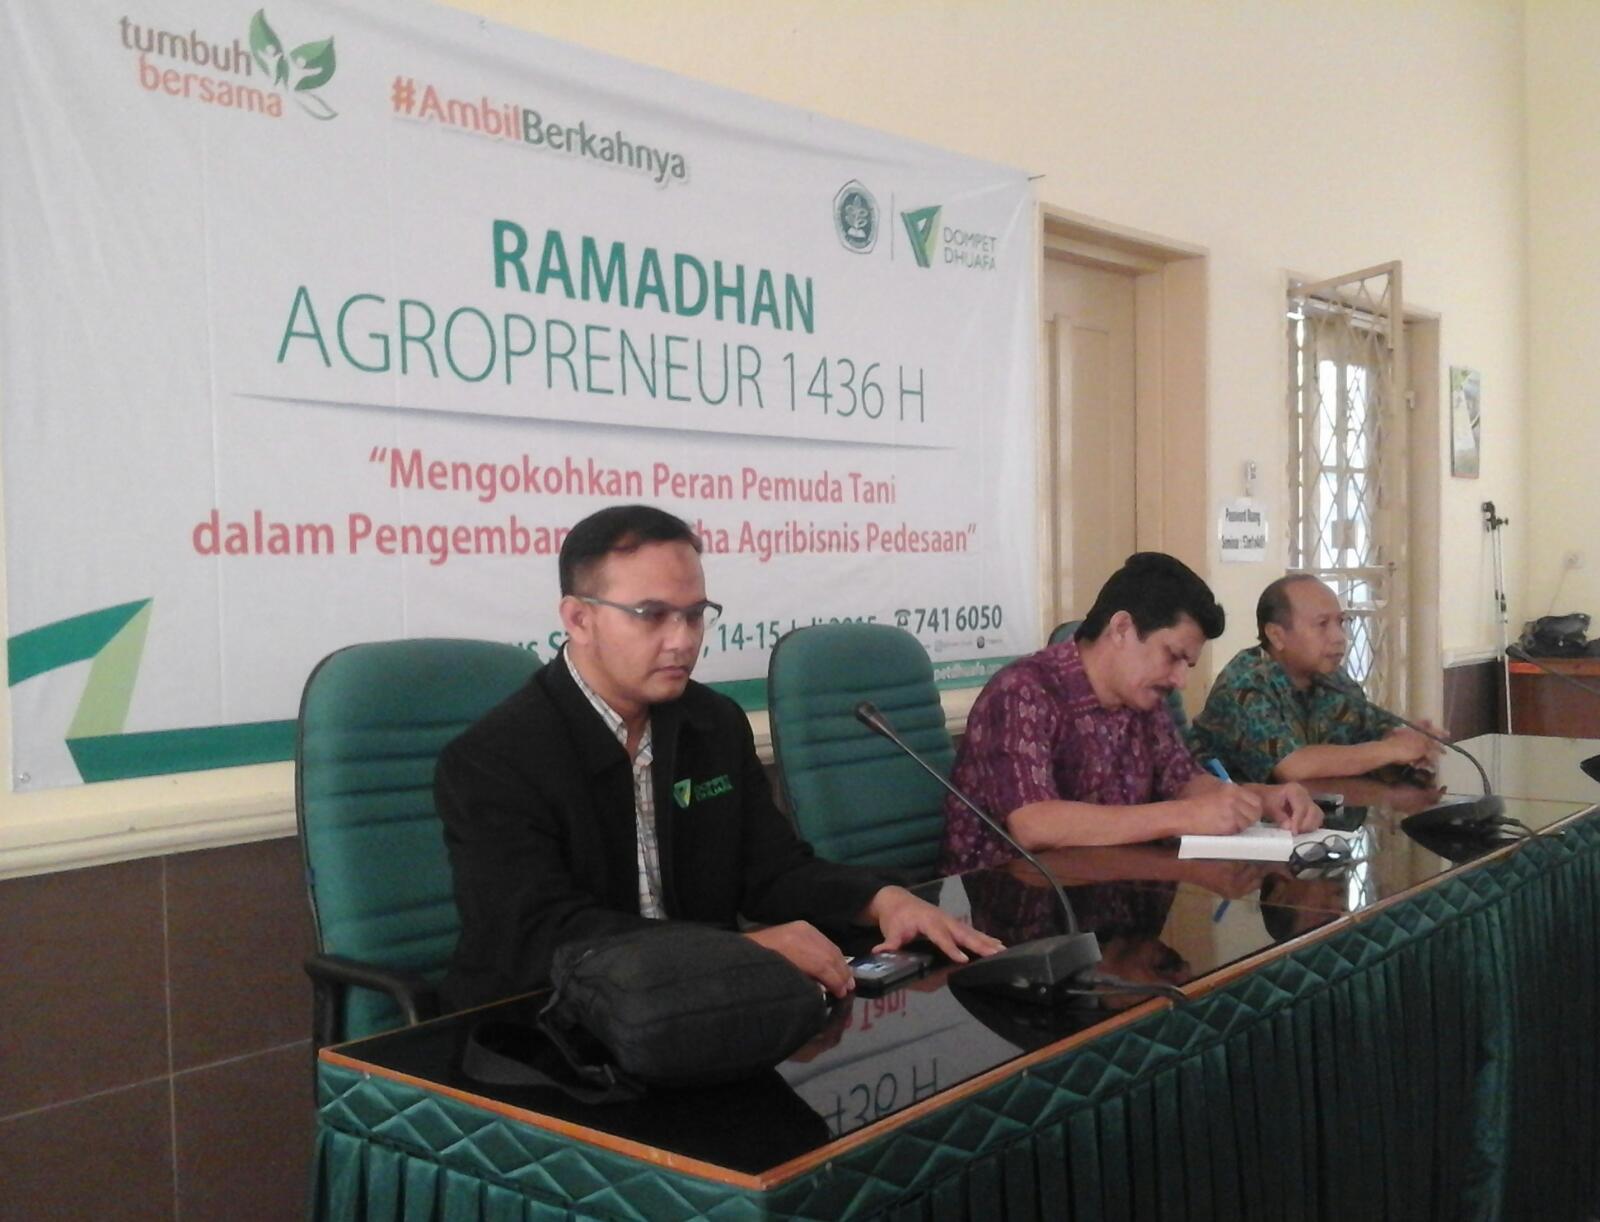  Ramadhan Agropreneur mengokohkan peran pemuda tani